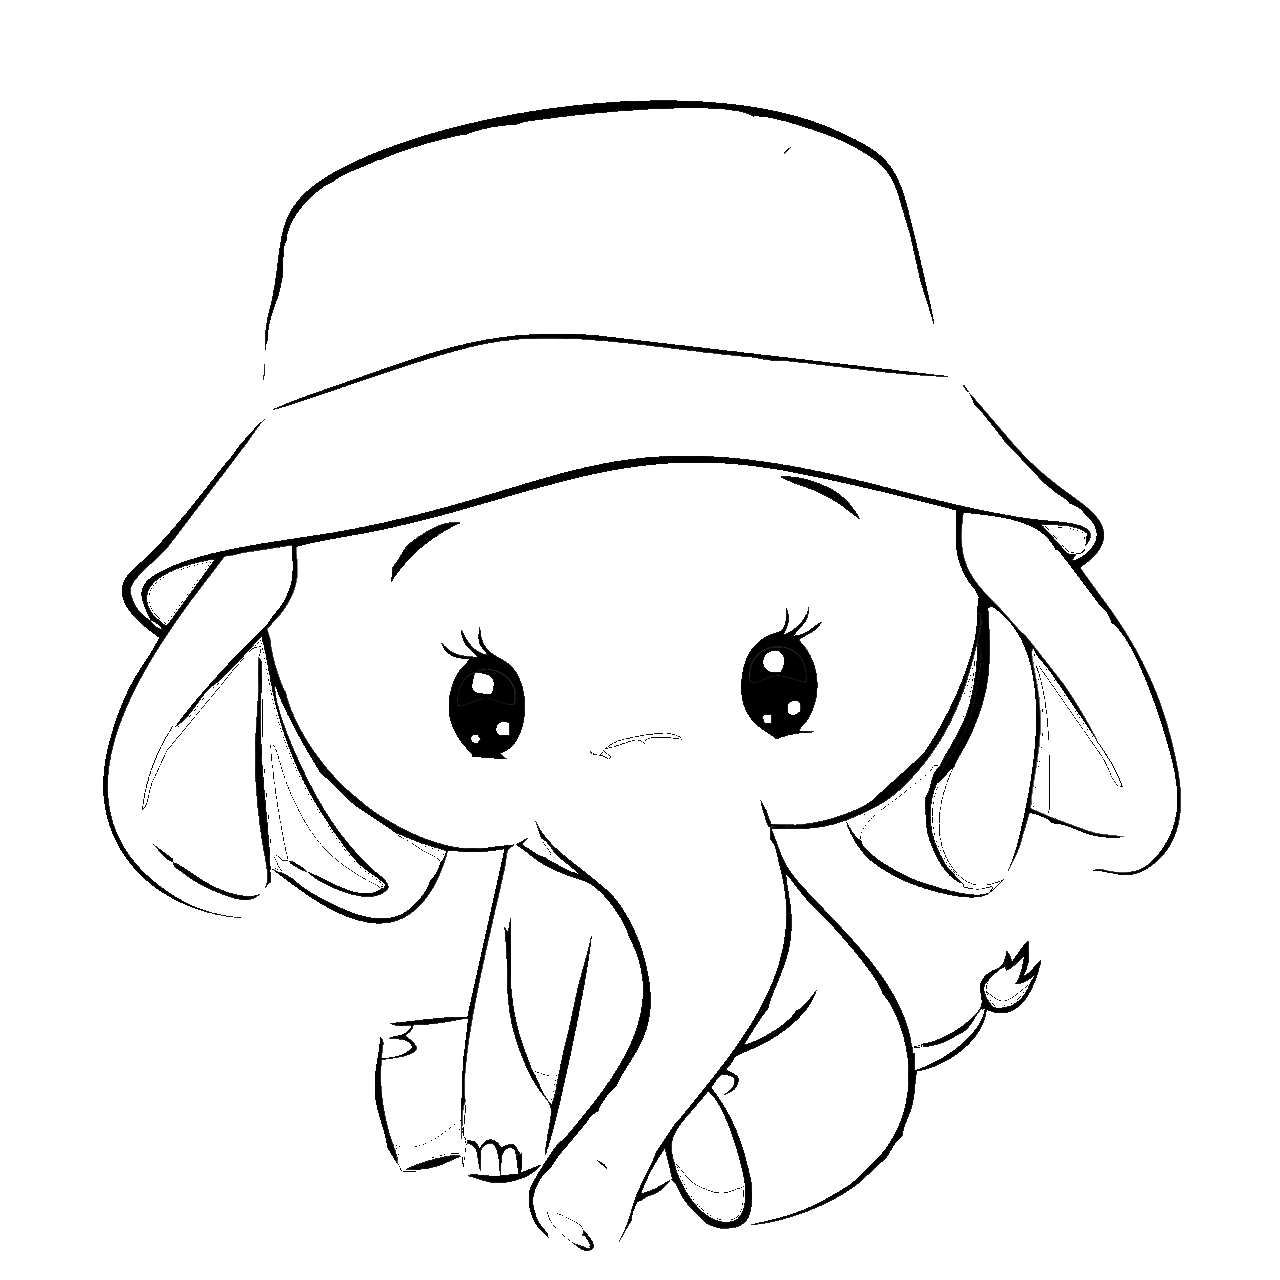 Dibujo para colorear de elefante kawaii con sombrero